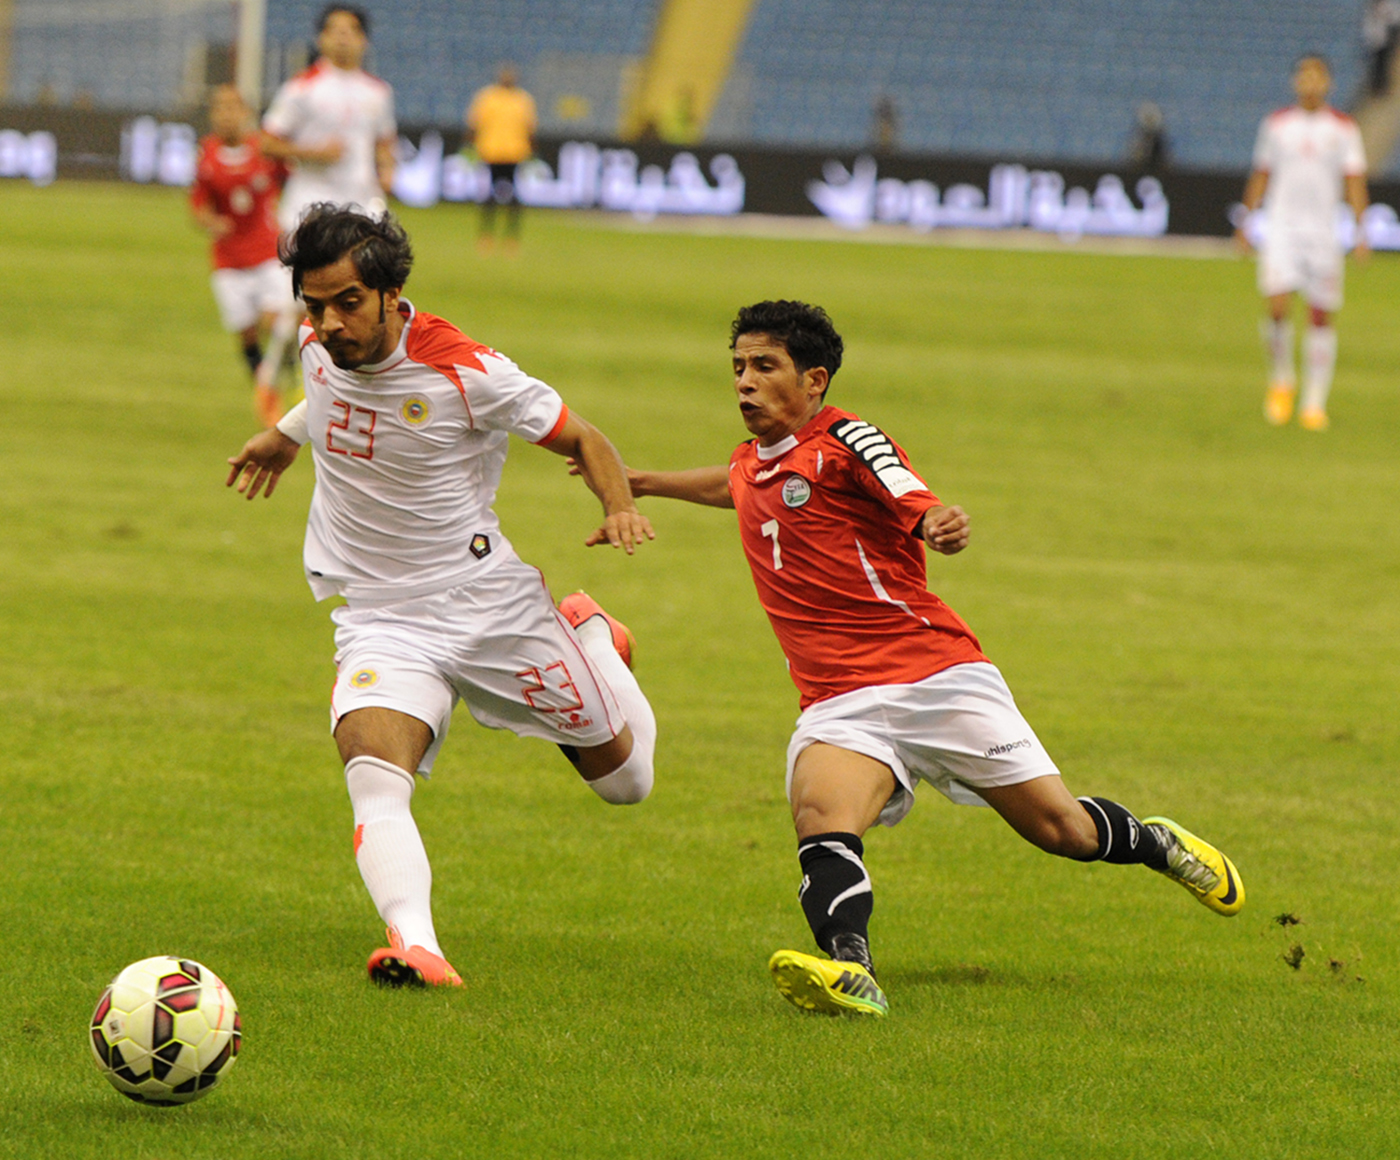 جانب من مباراة منتخبا اليمن والبحرين ضمن المجموعة الاولى من دورة كأس الخليج العربي ال22 لكرة القدم